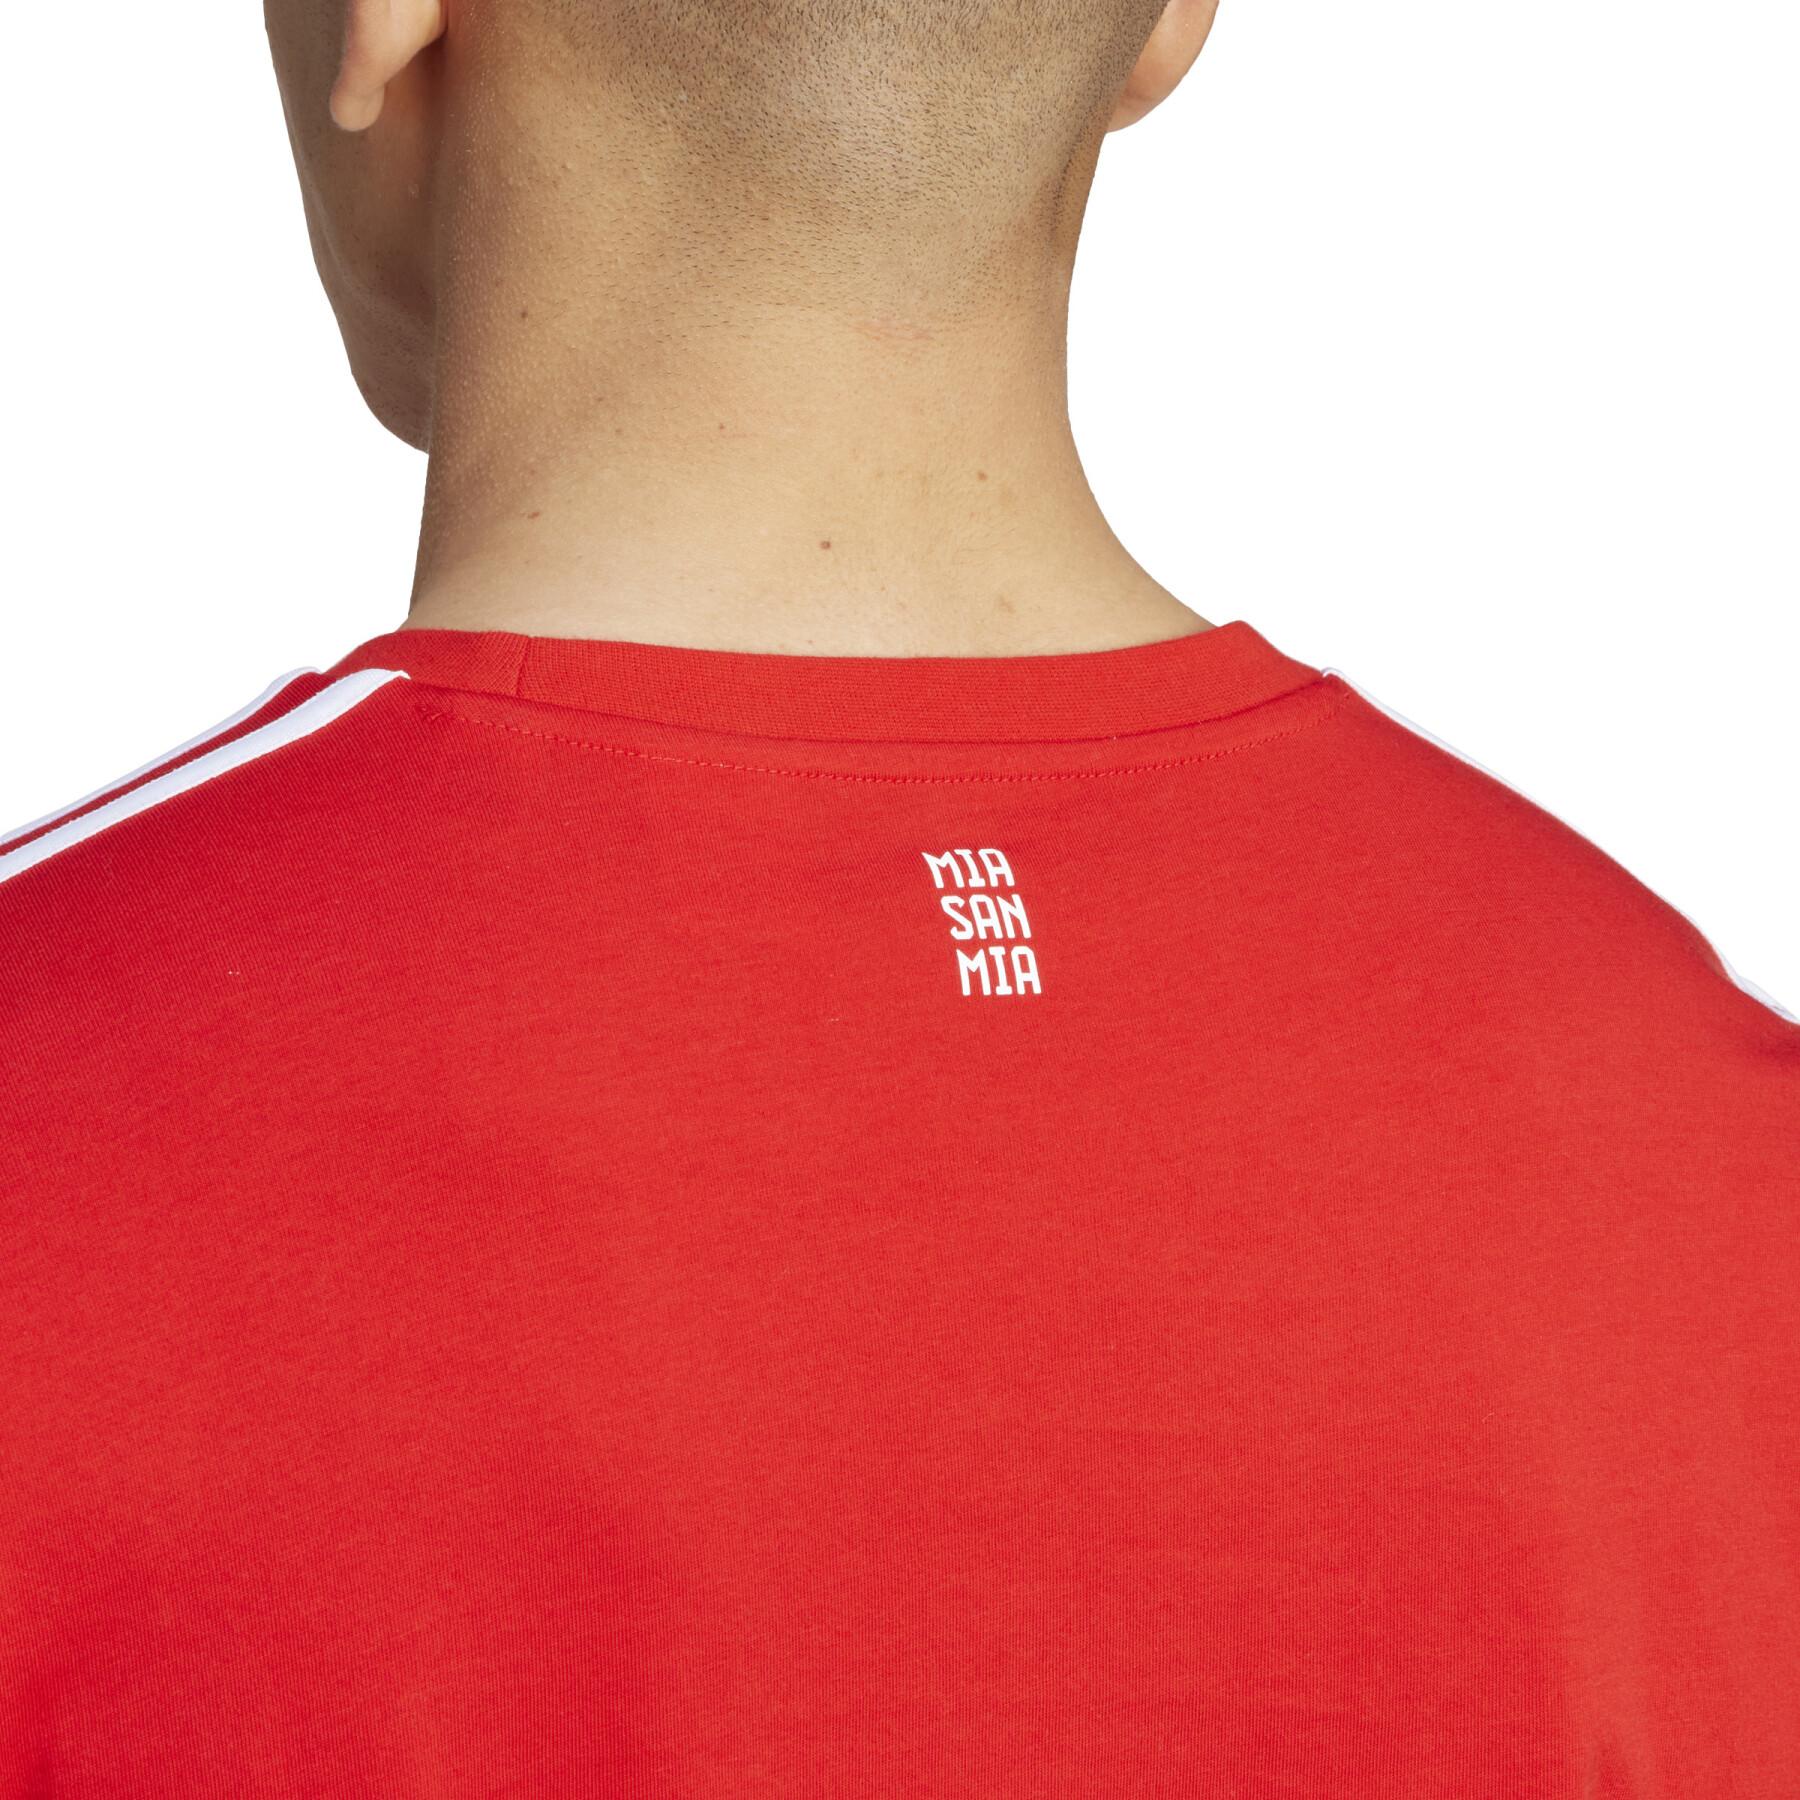 T-shirt Bayern Munich